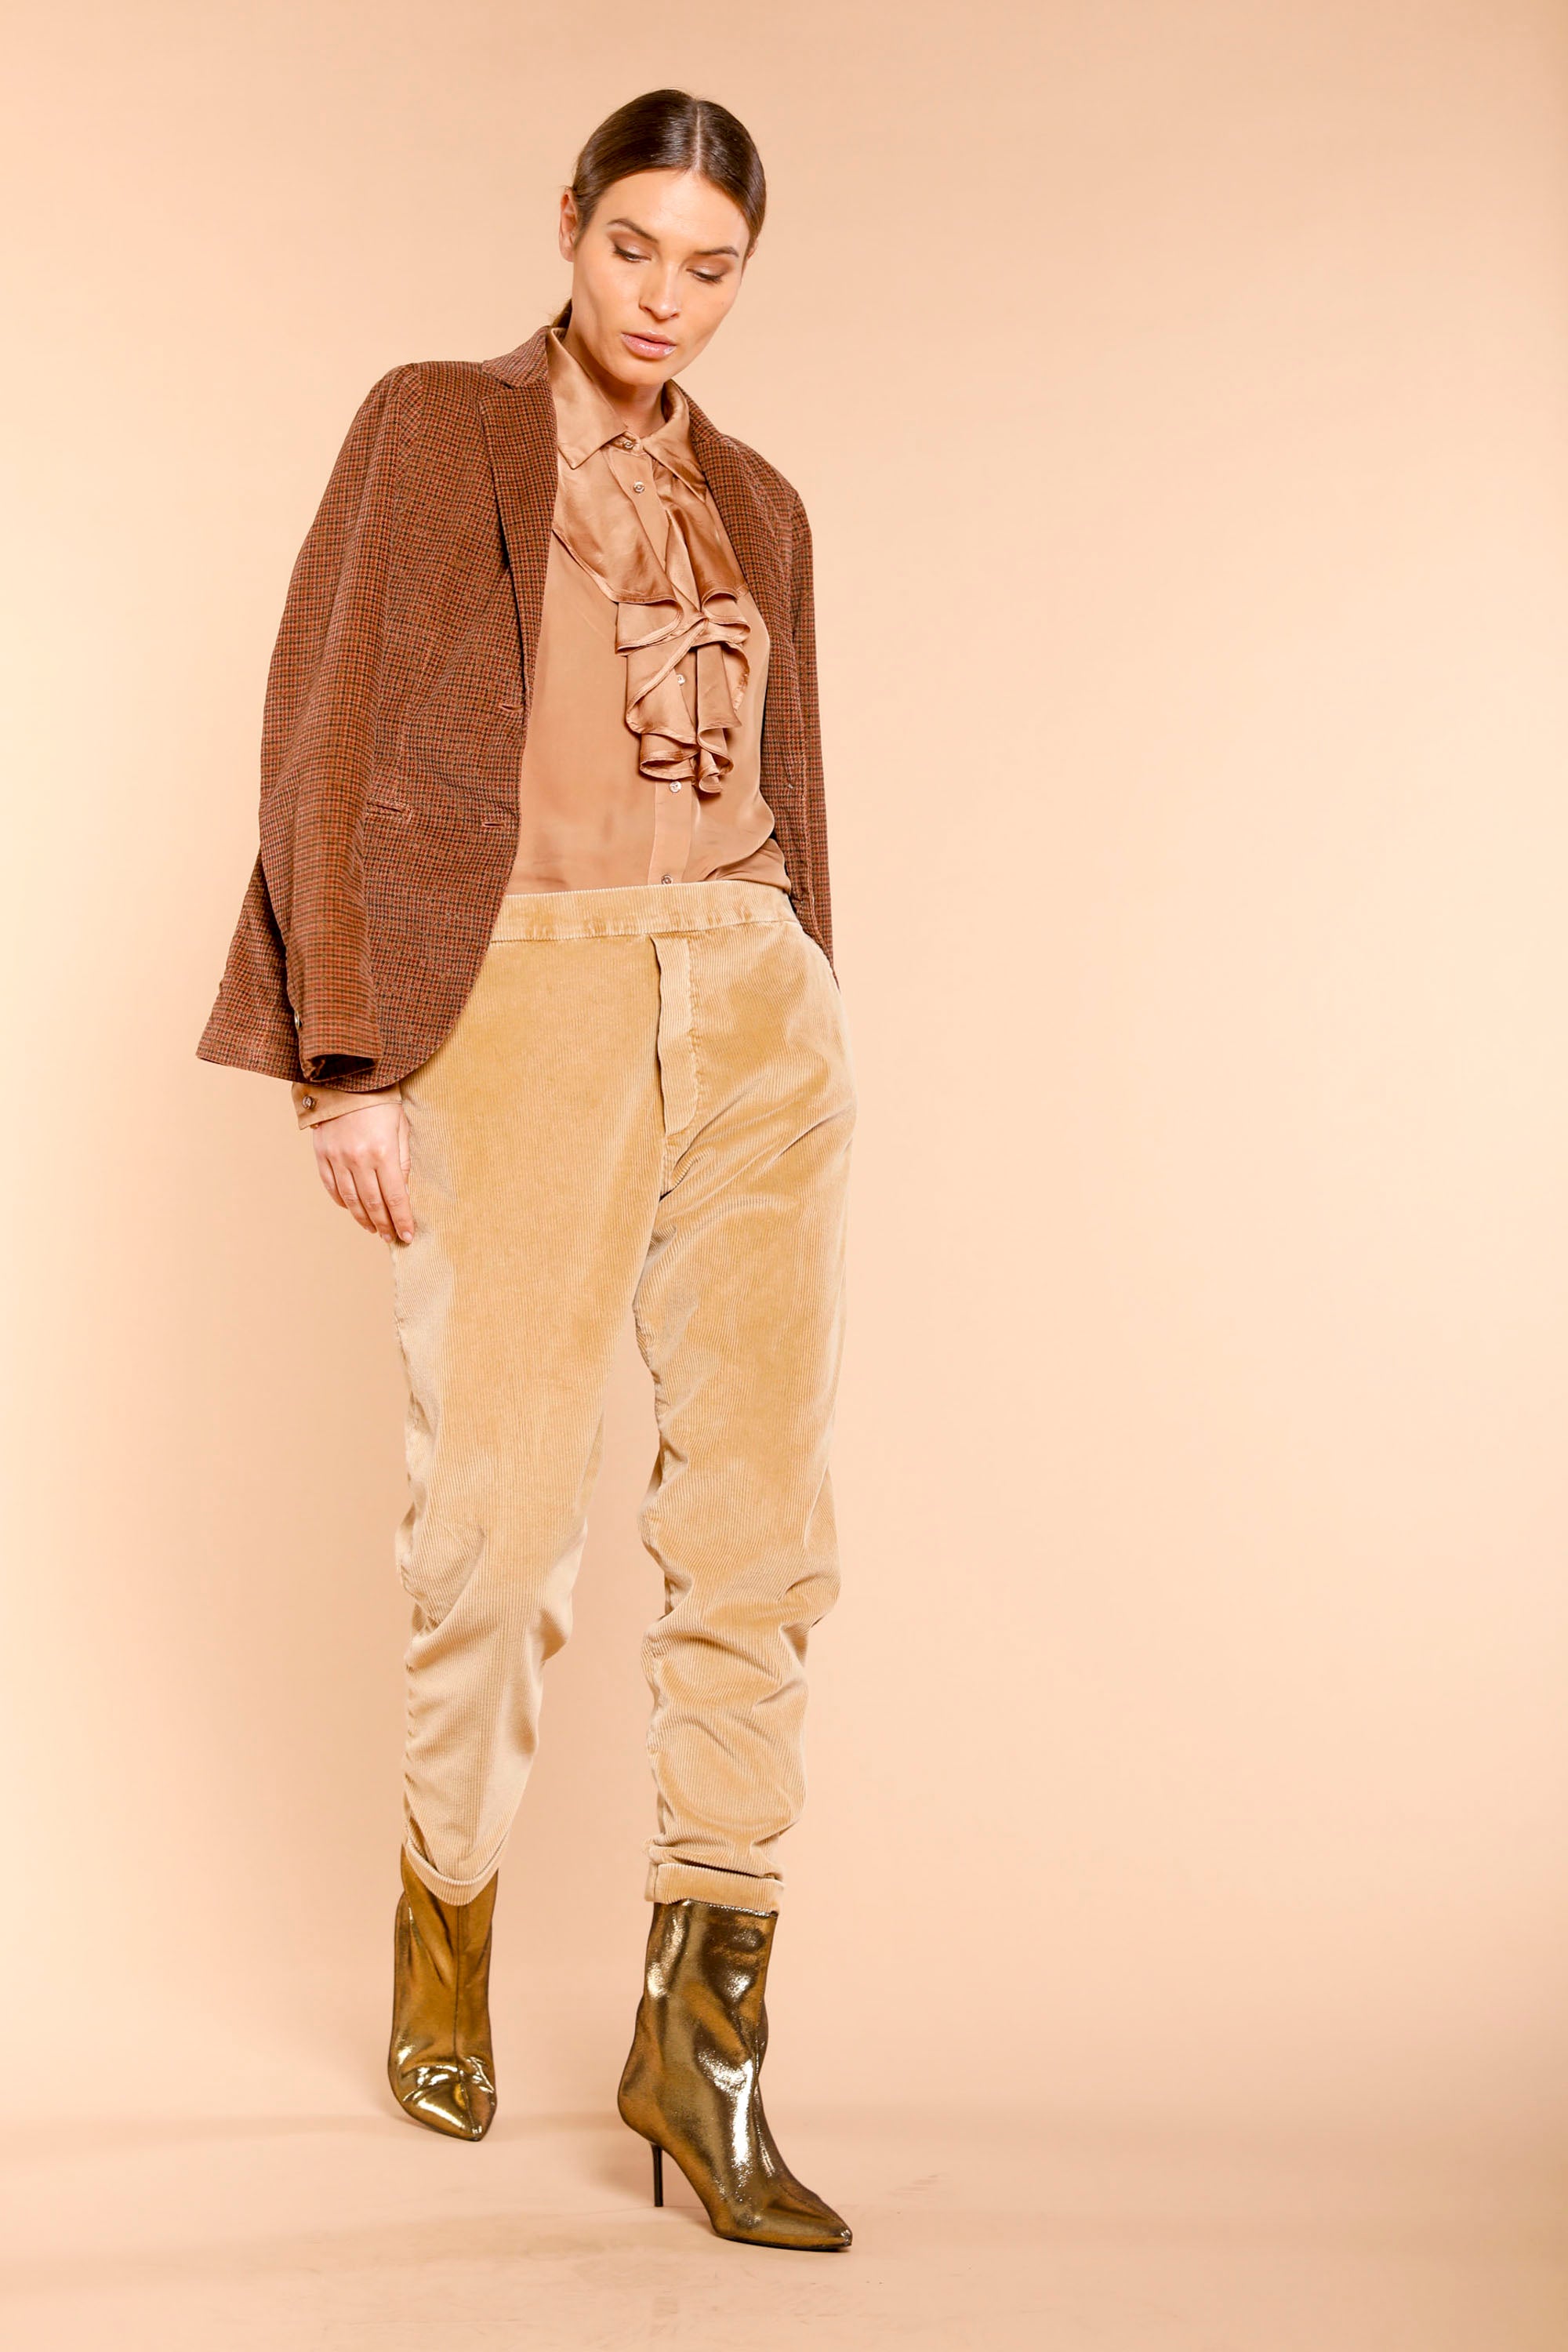 Image 2 du pantalon chino femme en velours côtelé noisette modèle Malibu Jogger City de Mason's